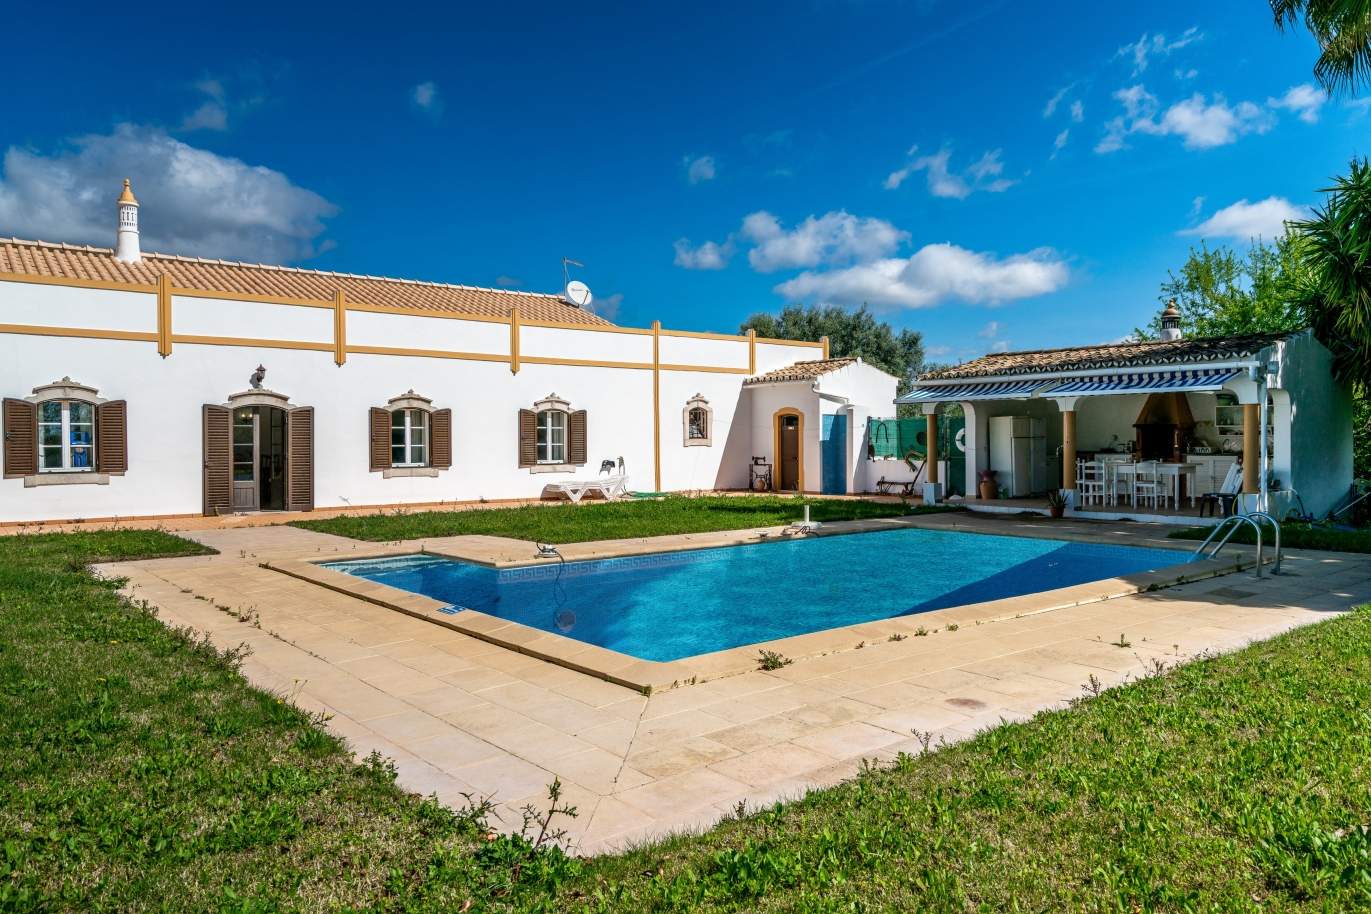 Venda de moradia com piscina em Boliqueime, Loulé, Algarve_98524